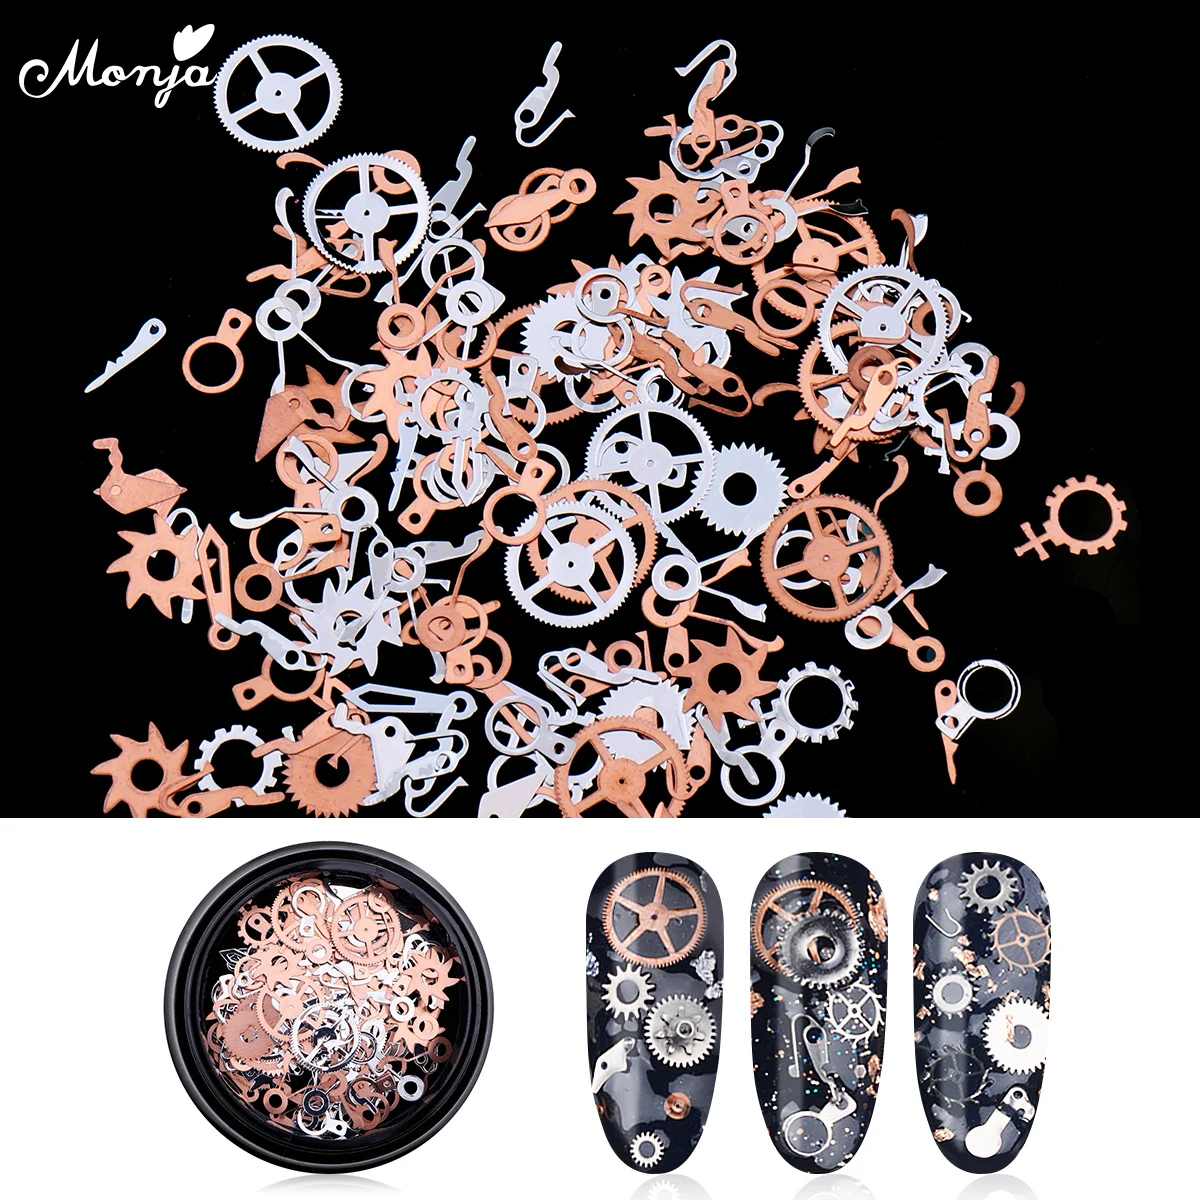 Monja 1 коробка дизайн ногтей ультра тонкие колеса шестерни паровые Подвески хлопья стимпанк металлические 3D украшения Аксессуары